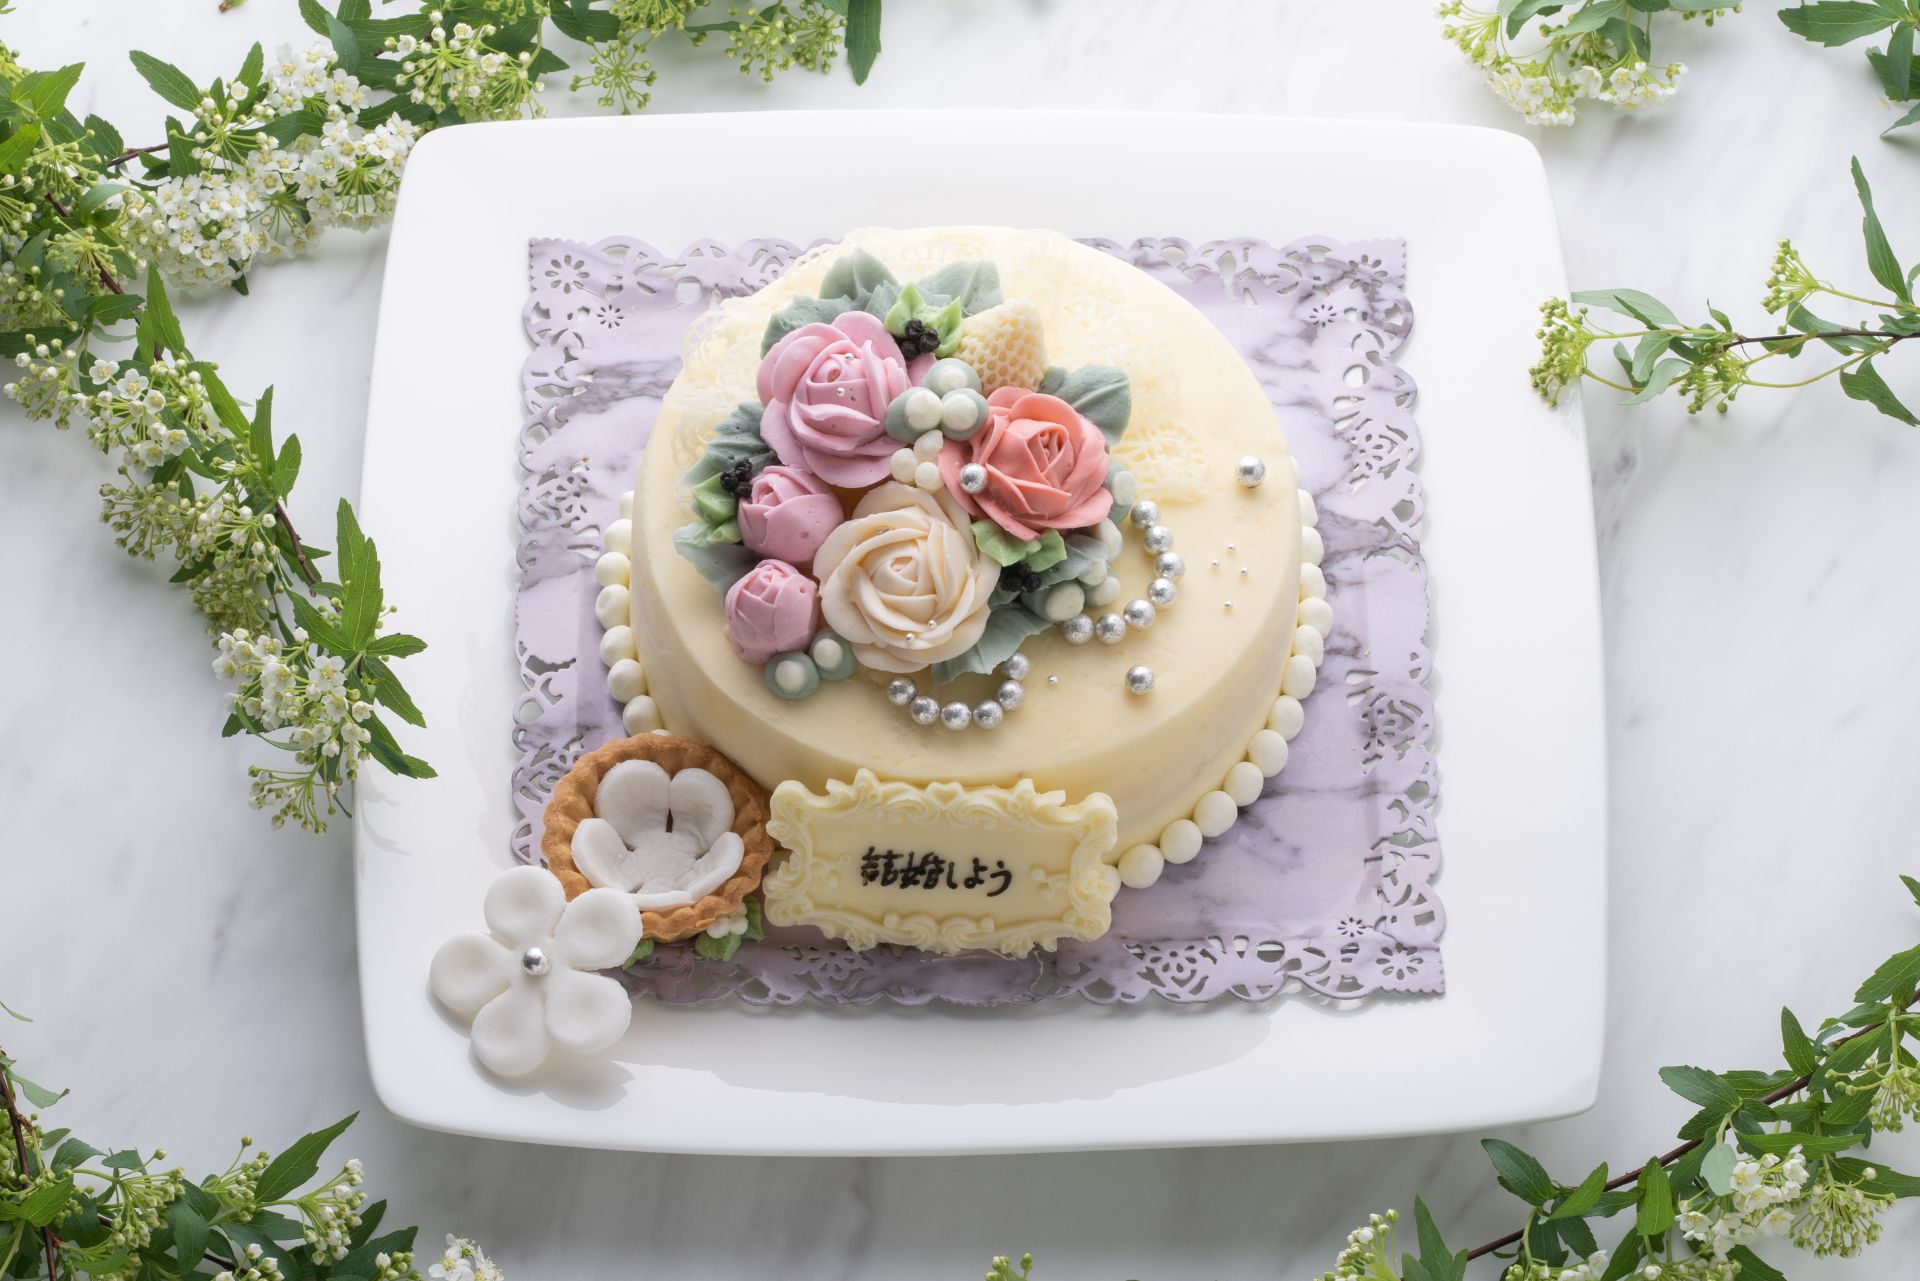 プロポーズ用のメッセージを添えたケーキ